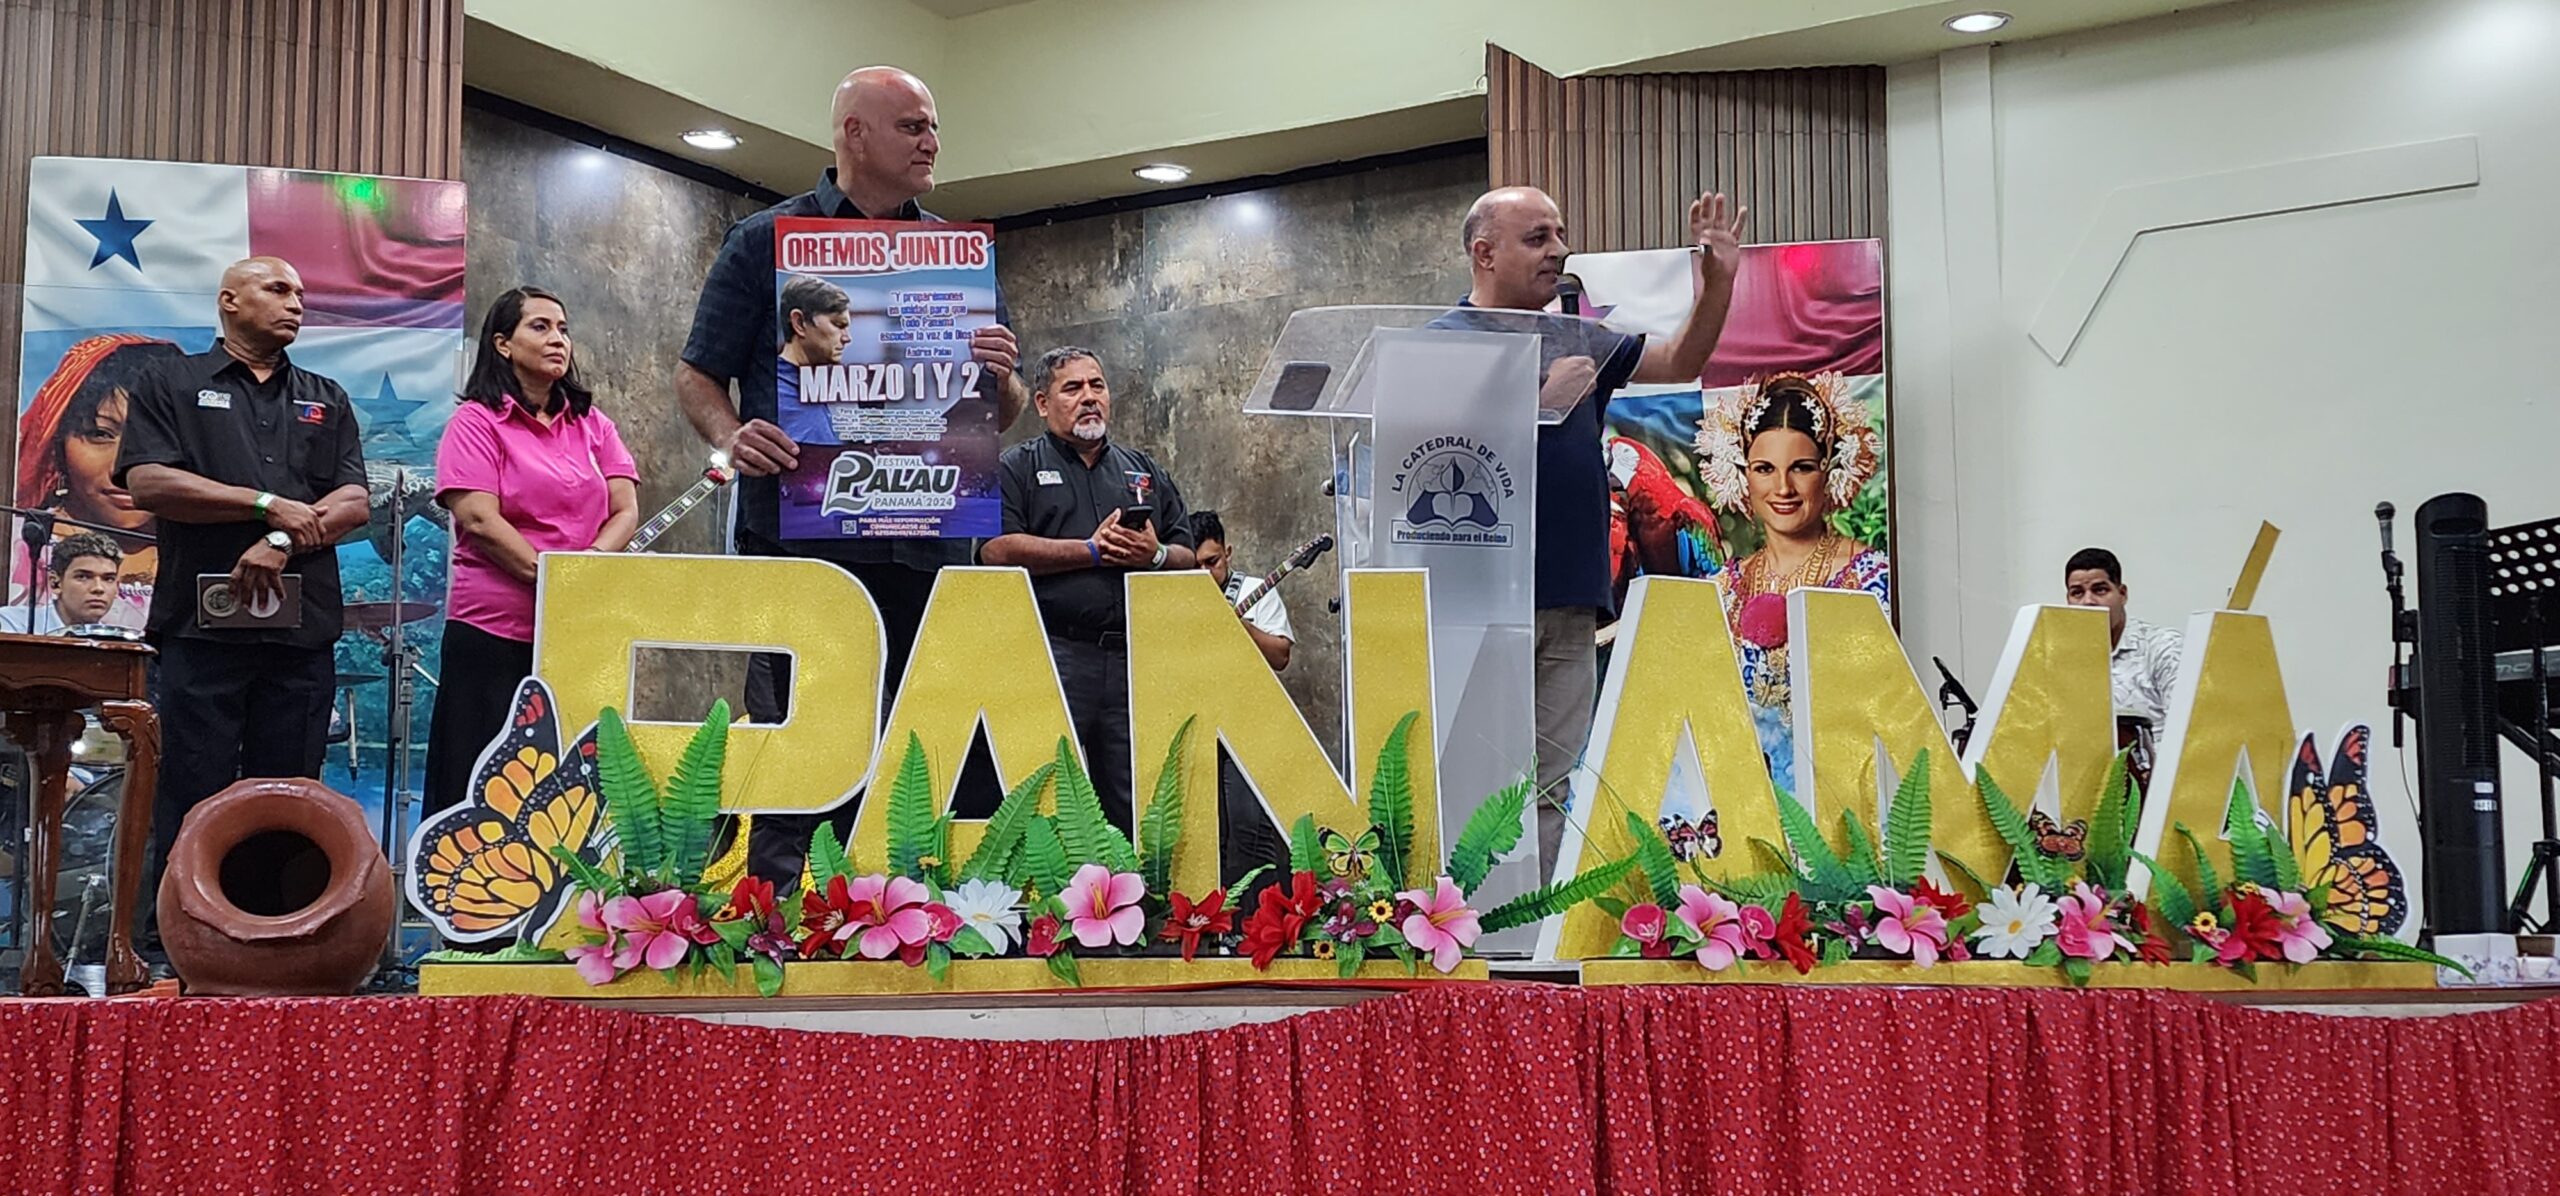 Se presentó el Festival Palau ante el Concilio de las Asambleas de Dios en Panamá City